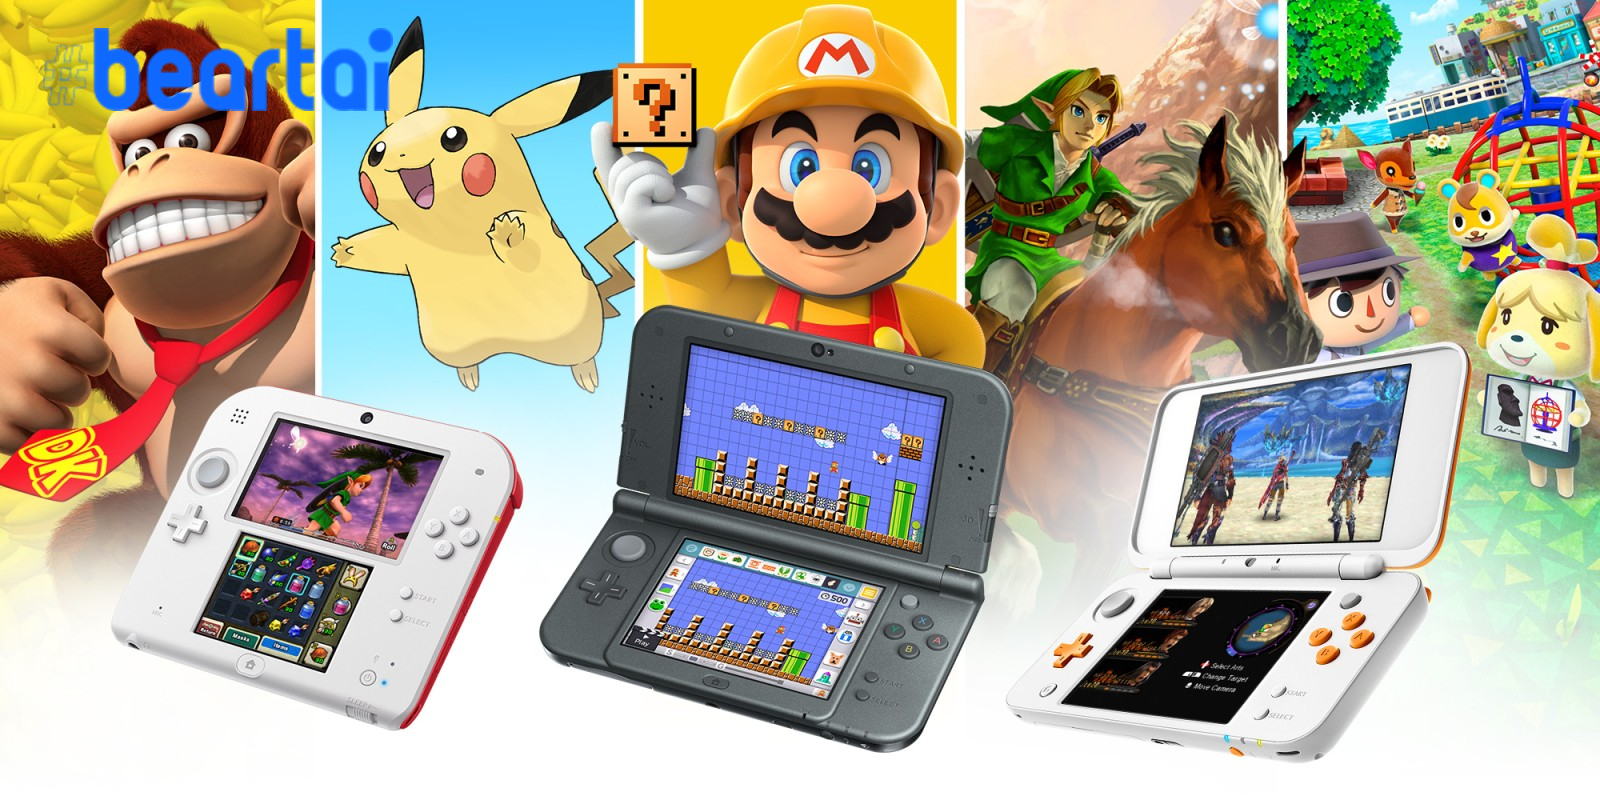 Nintendo ประกาศยุติการผลิต Nintendo 3DS แล้ว